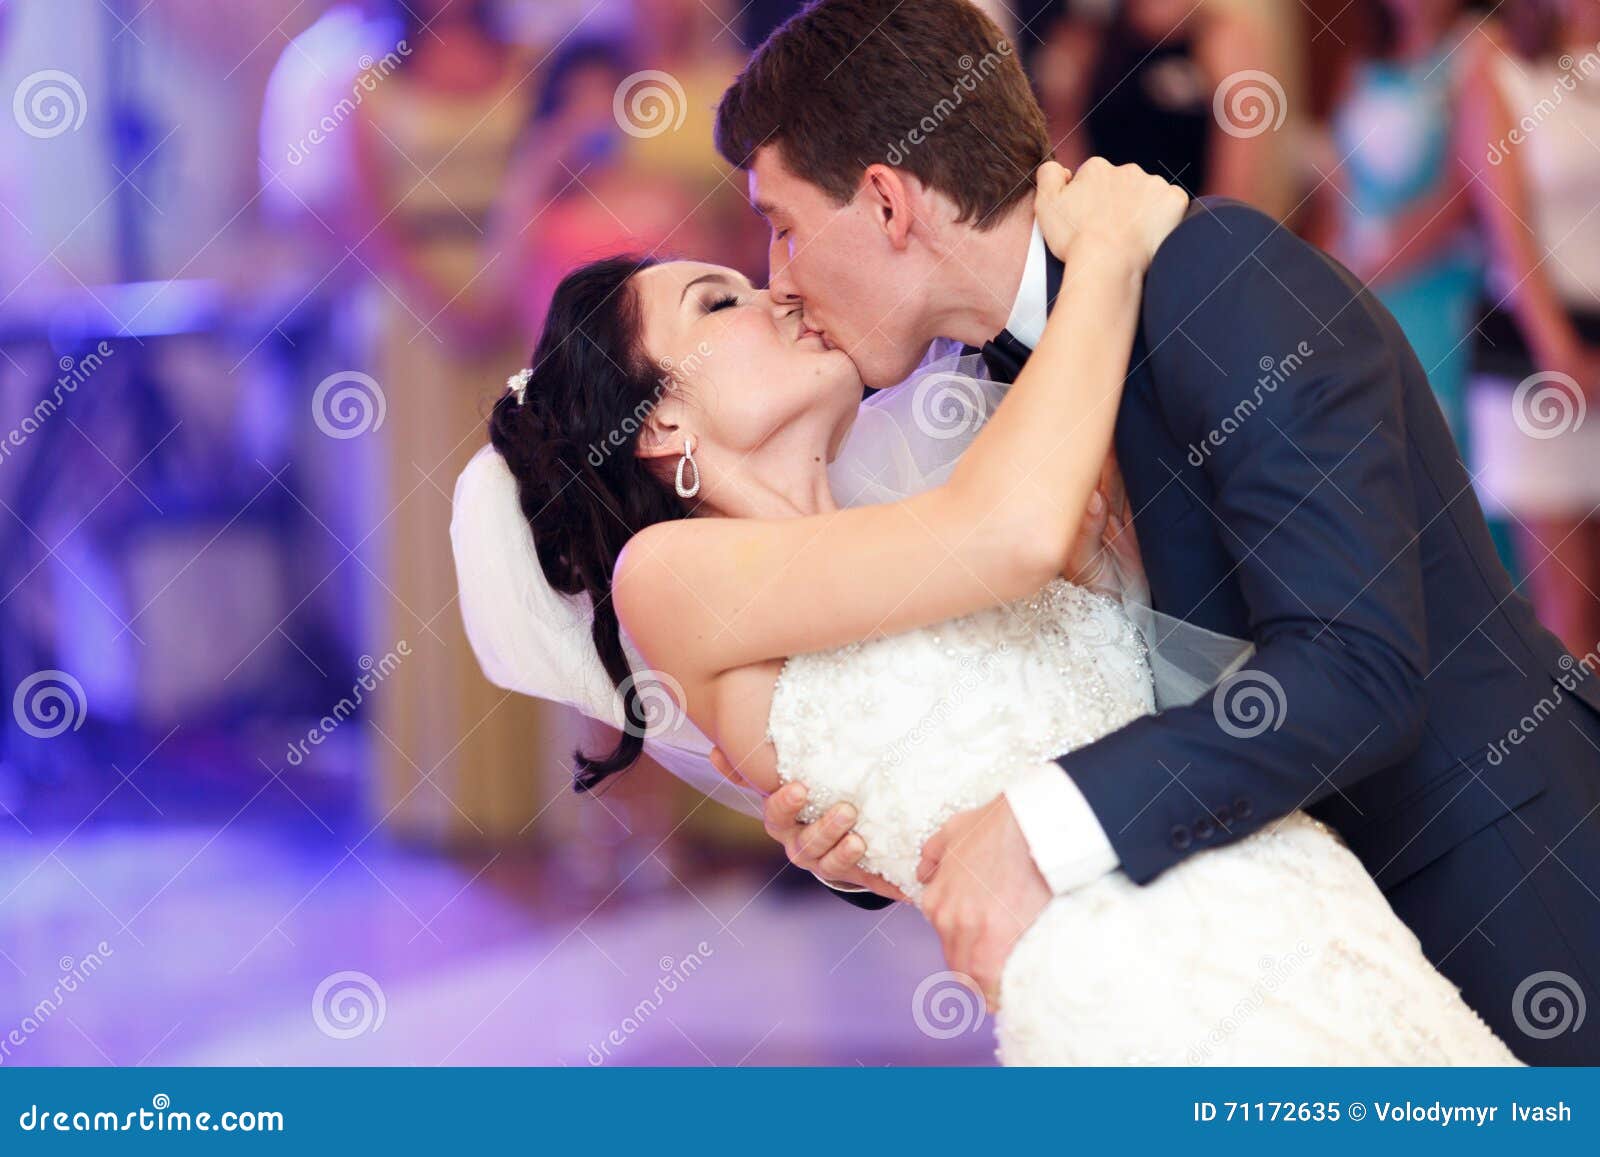 亲吻新娘的新郎在他们的婚礼之日 库存图片. 图片 包括有 布赖恩, 女性, 乐趣, 结婚, 绿色, 男人 - 66516683